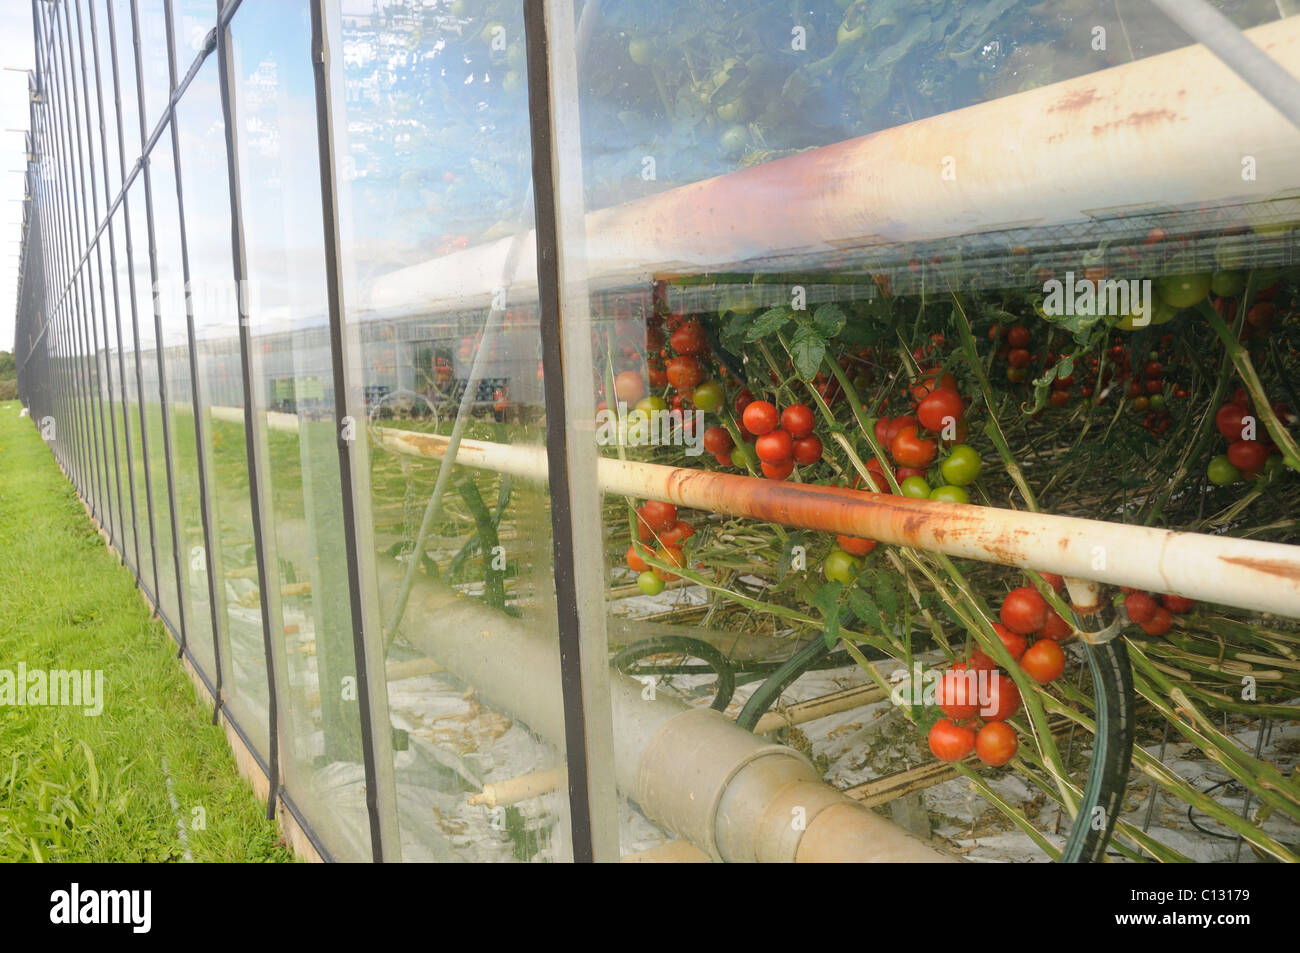 Glasshouses growing tomatos Stock Photo